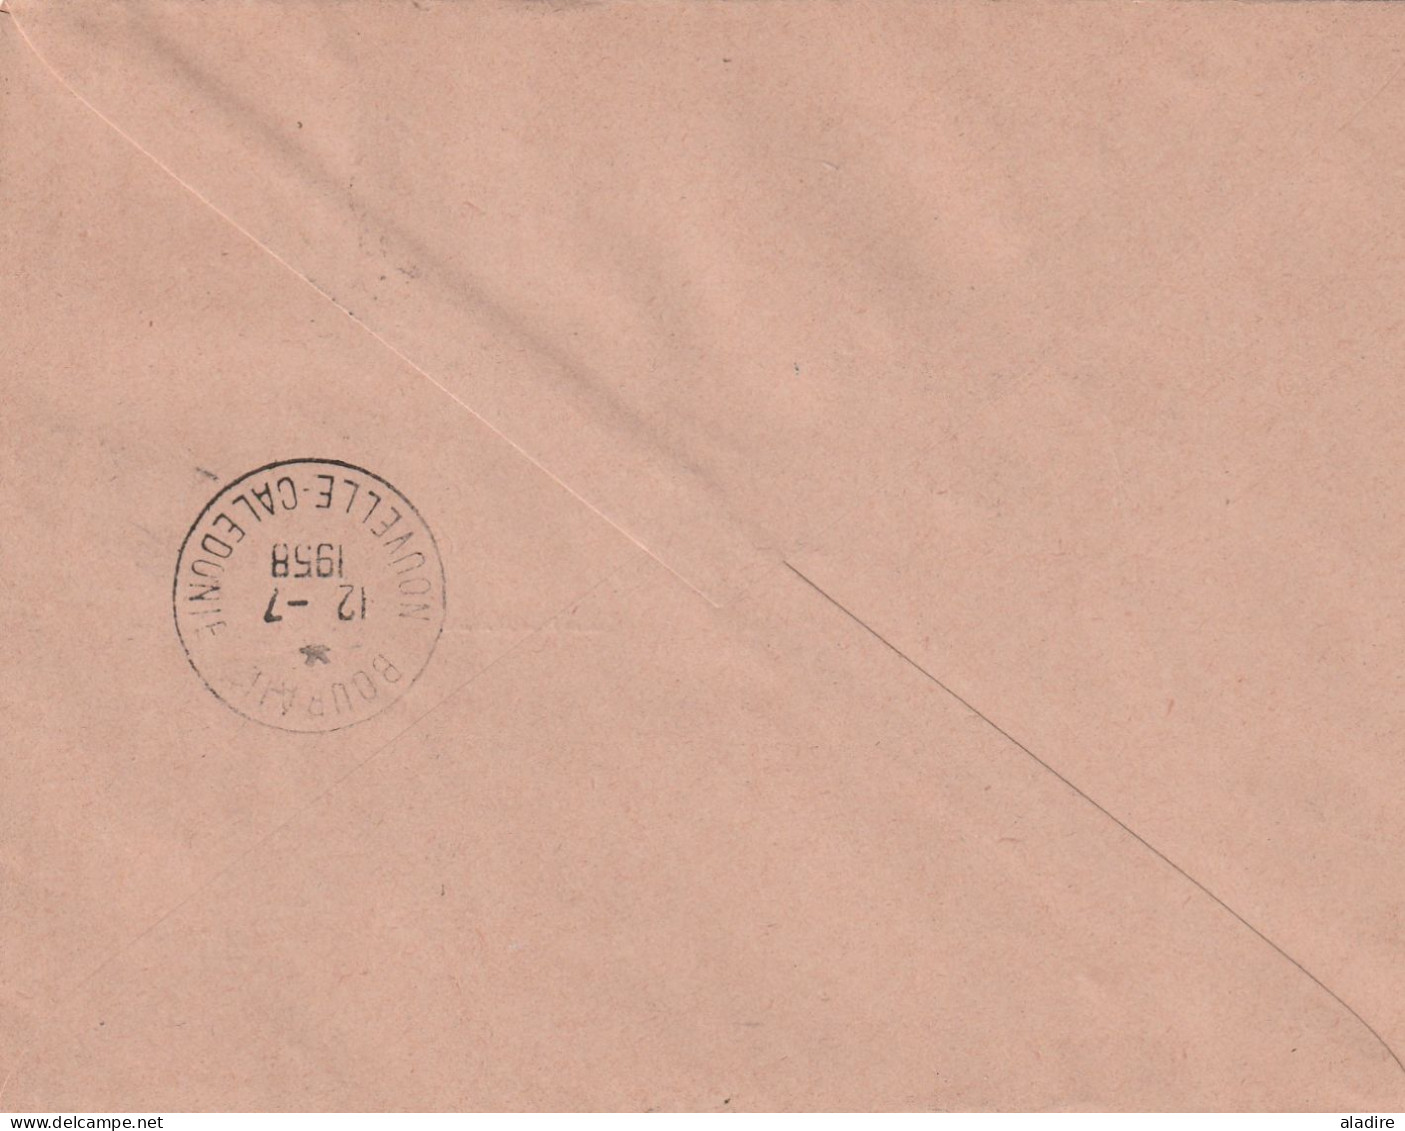 Nouvelle Calédonie - 1900 - 1977 - collection de 13 cartes et enveloppes - 26 scans